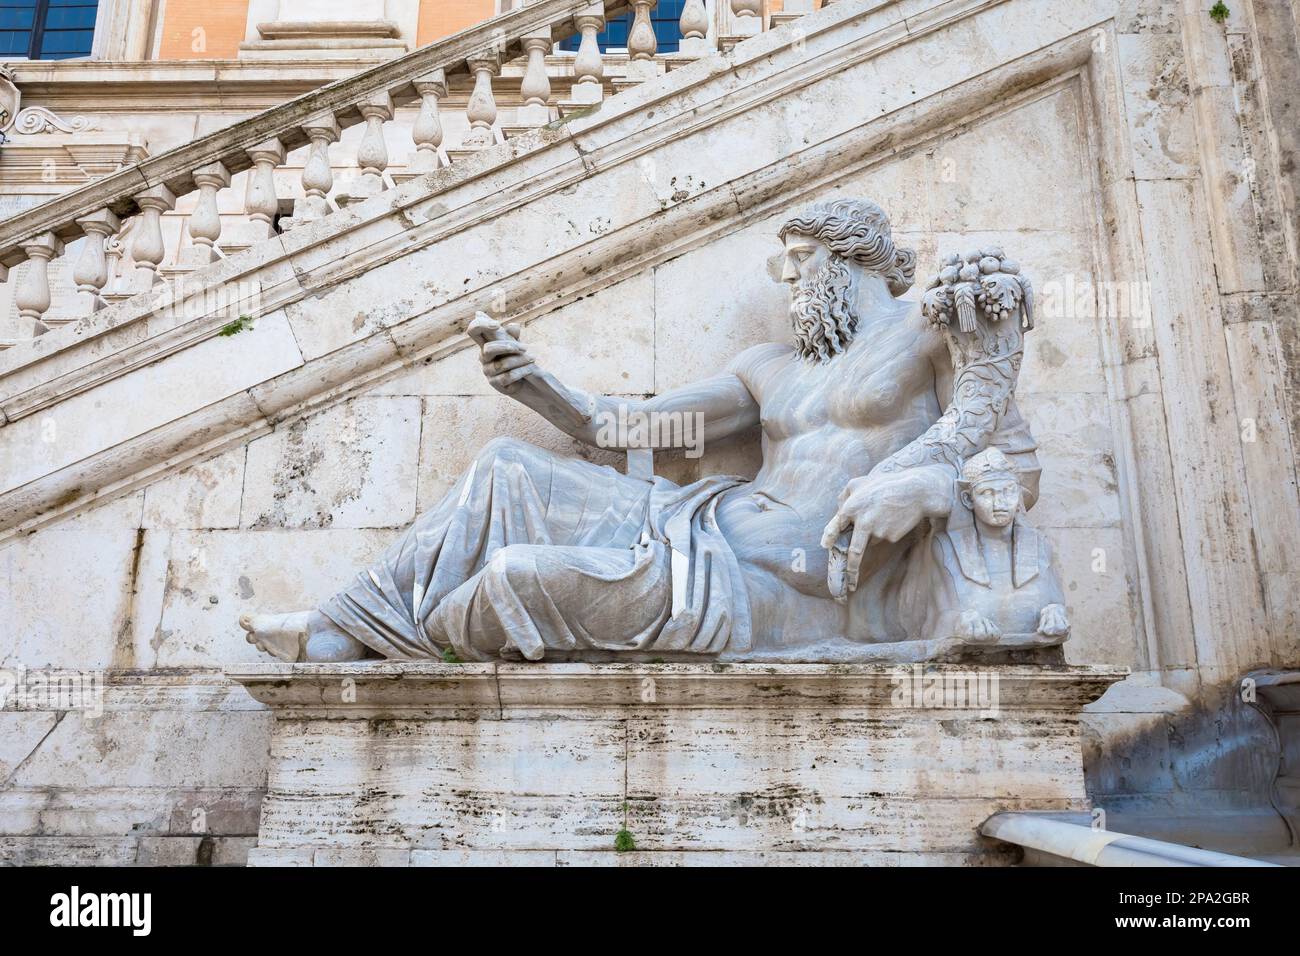 Rom, Italien. Blick auf die Treppe des Palazzo Senatorio, ein Meisterwerk der Renaissance. Die doppelte Treppenrampe wurde von Michelangelo AS entworfen Stockfoto